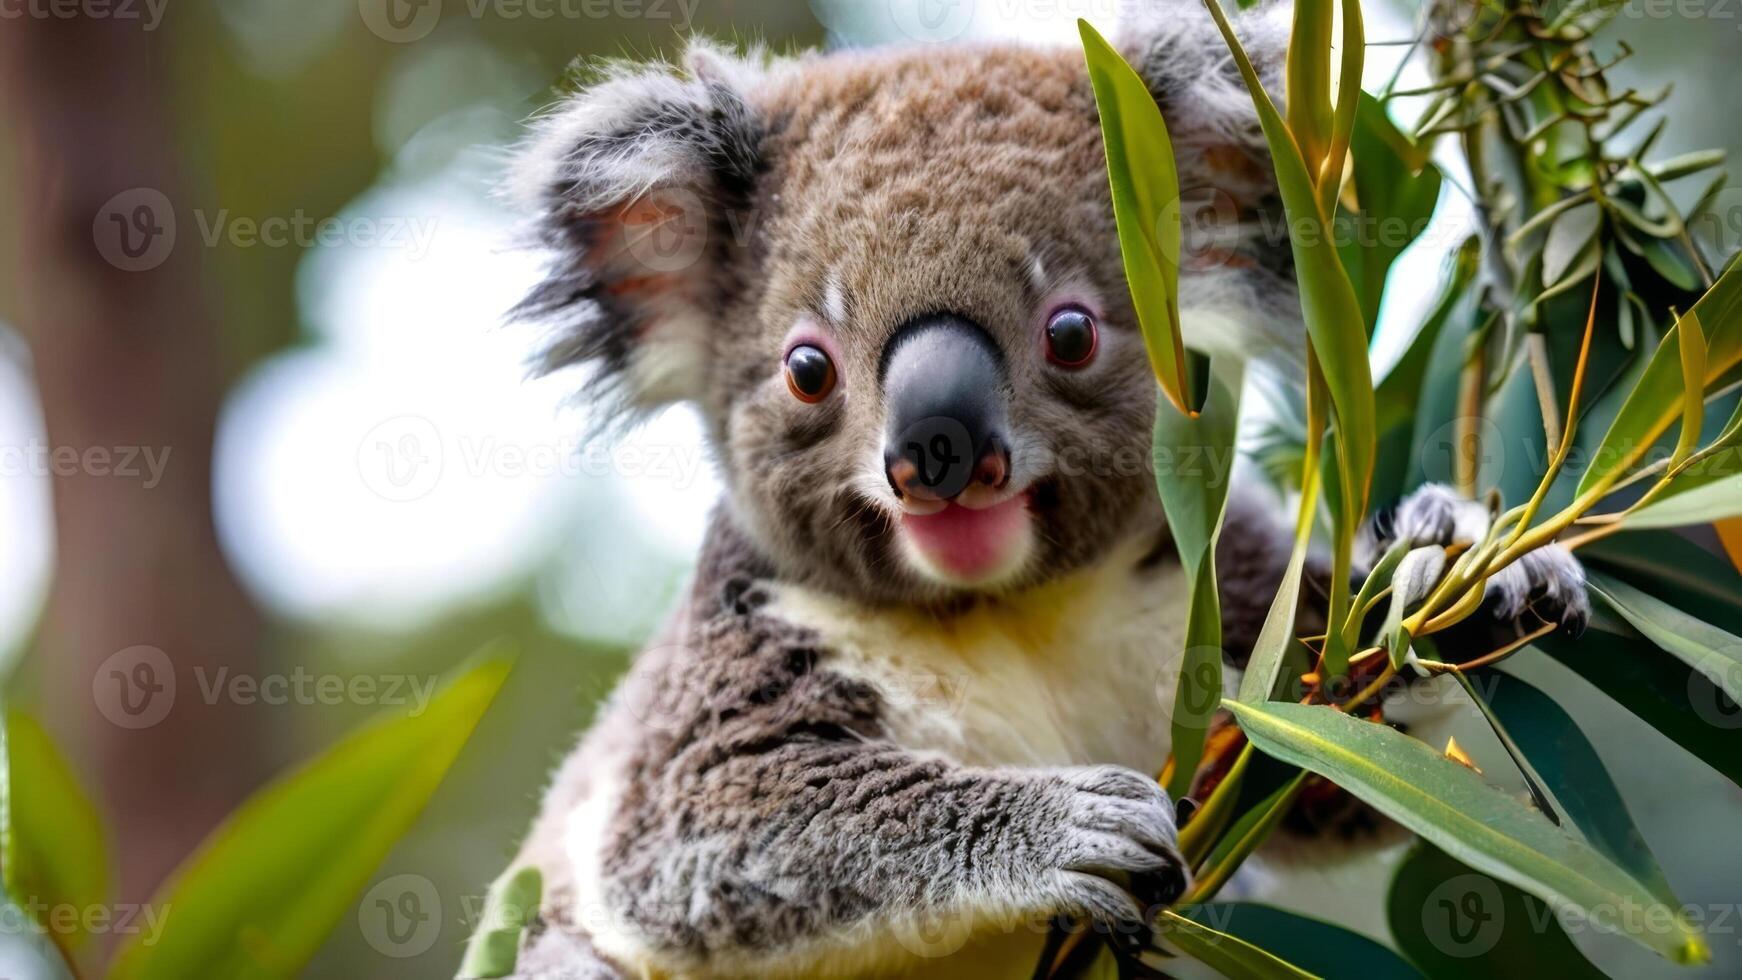 entrañable bebé coala descansando en medio de eucalipto follaje. vibrante de cerca de un mullido australiano marsupial. concepto de fauna silvestre conservación, natural hábitats, y adorable salvaje animal. foto